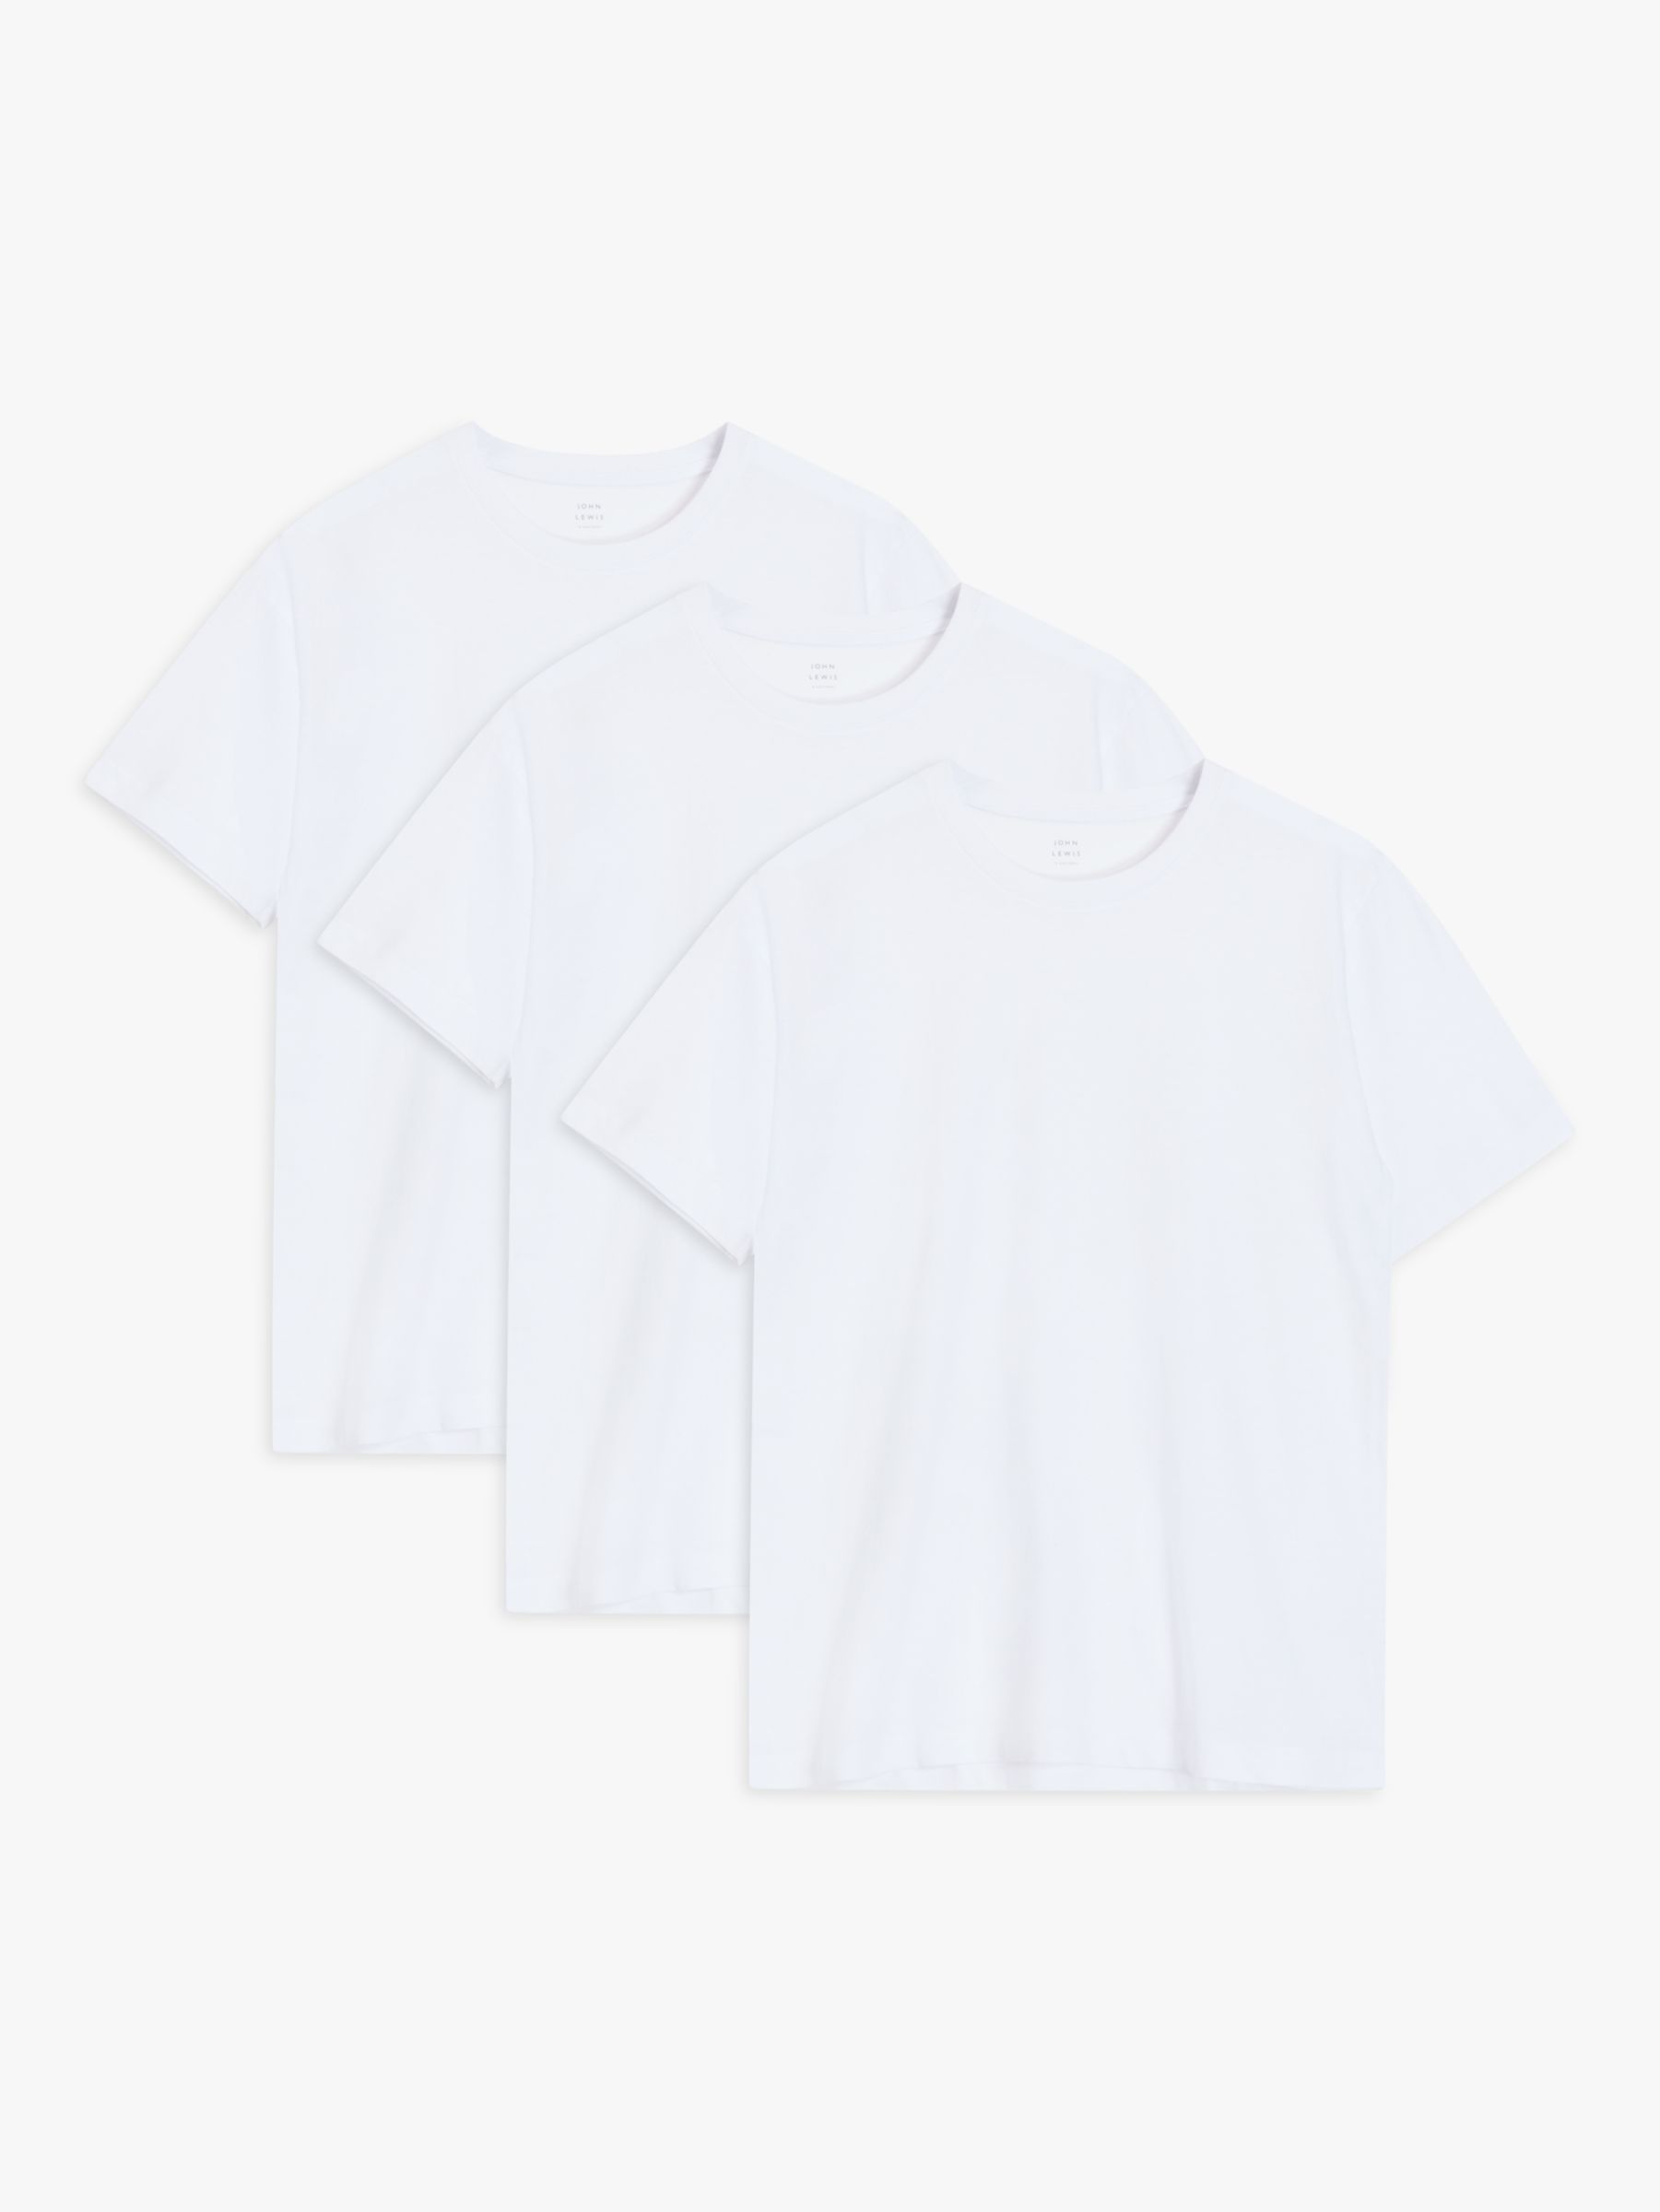 John Lewis Cotton T-Shirt, Pack of 3, White, £25.00